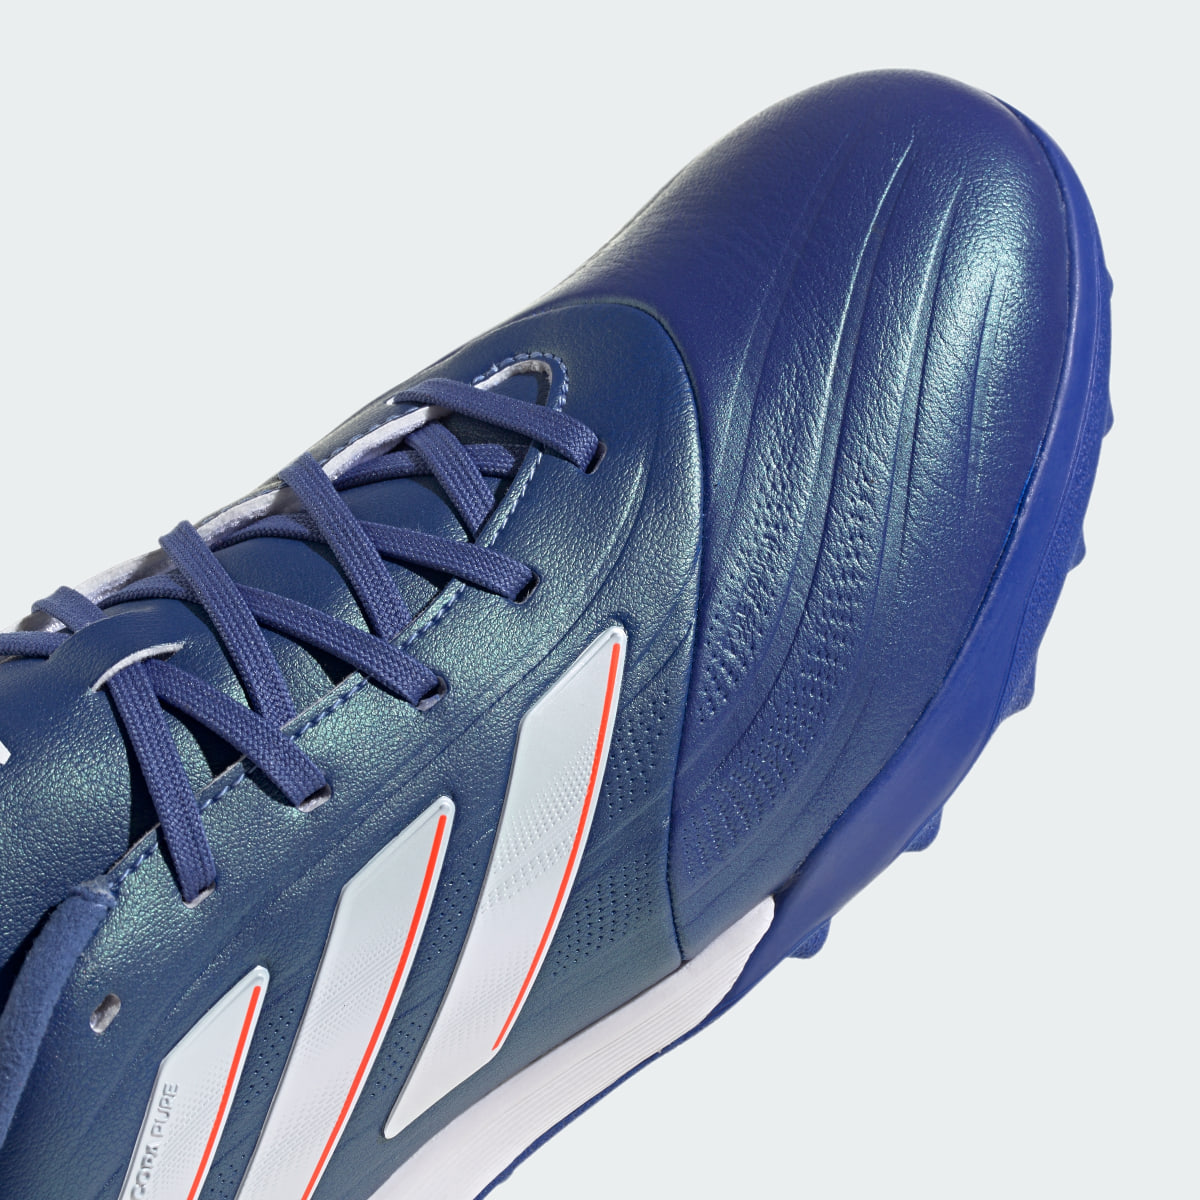 Adidas Copa Pure II.2 Turf Boots. 9